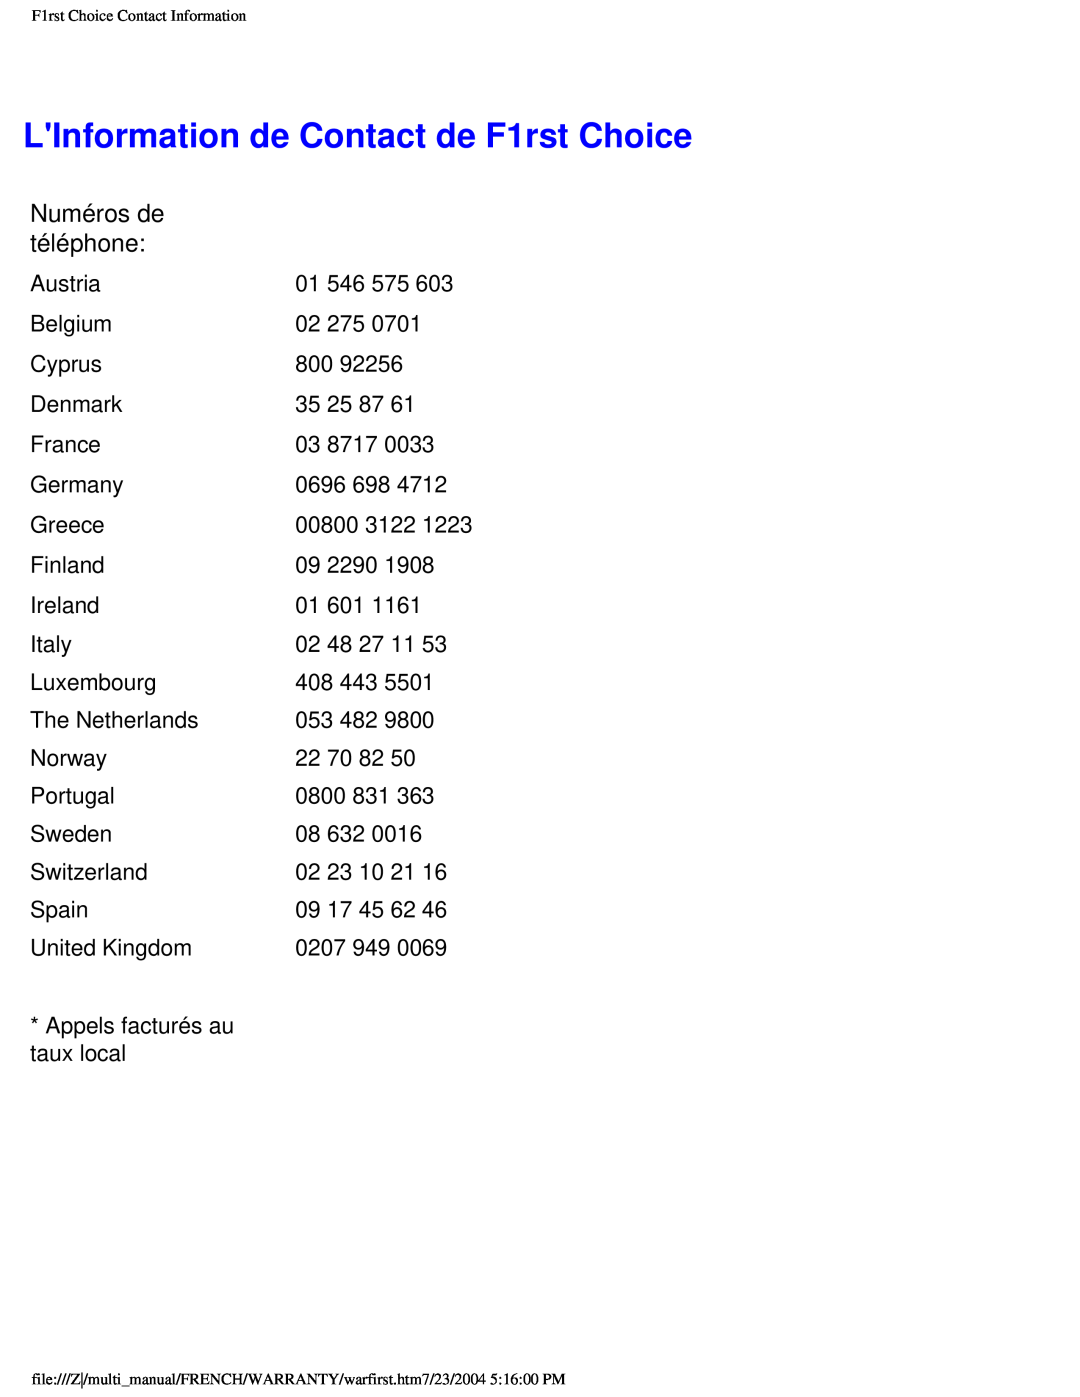 Philips 107B3 user manual LInformation de Contact de F1rst Choice, Numéros de téléphone 